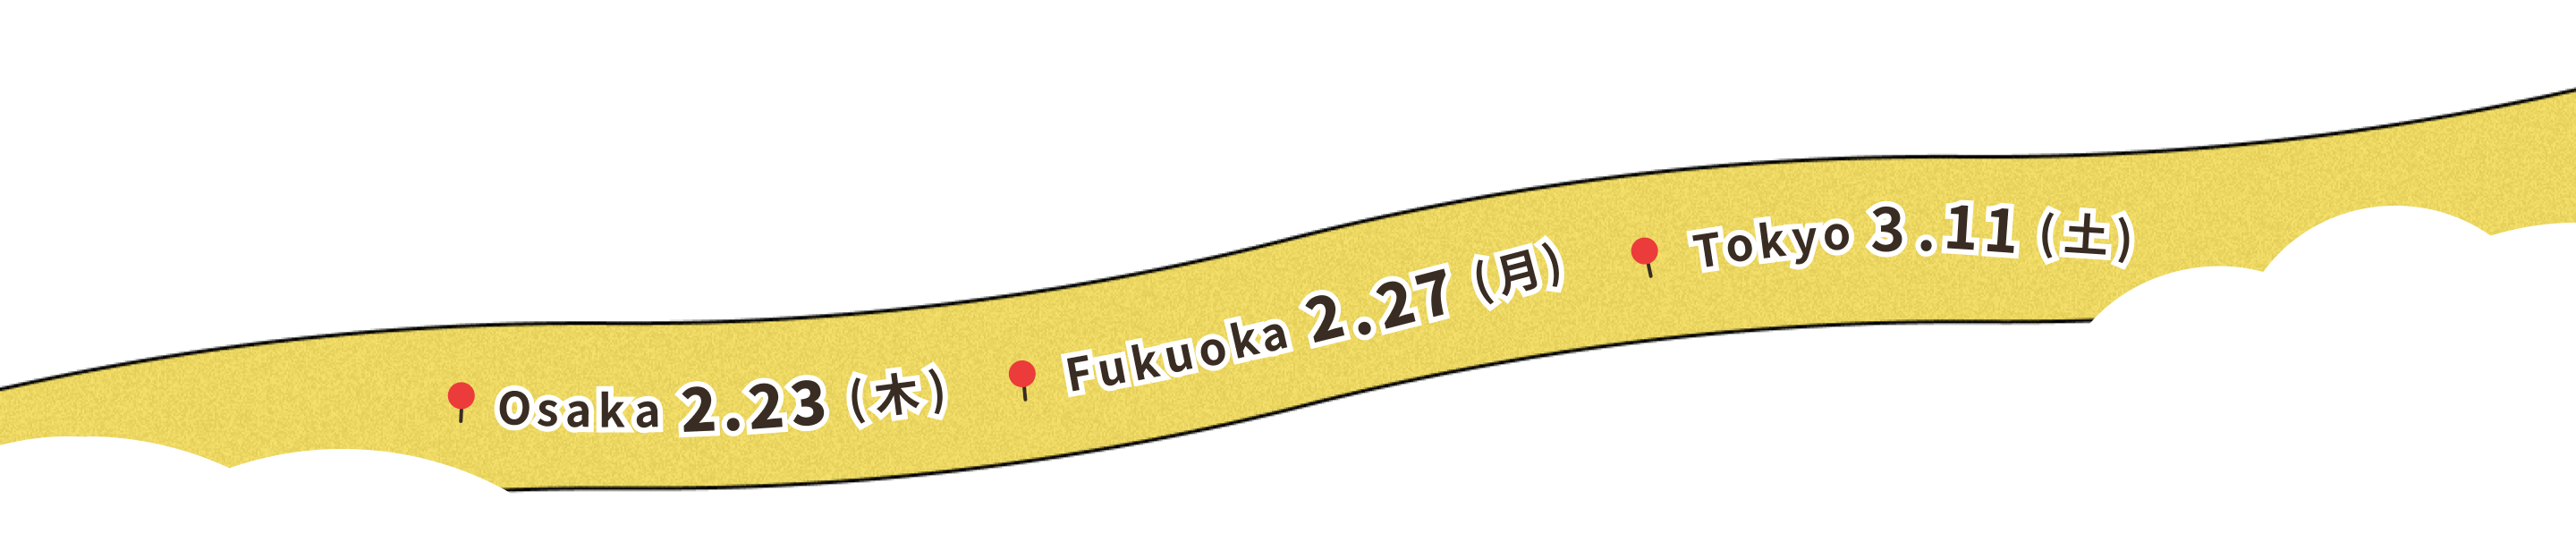 Osaka 2.23 / Fukuoka 2.27 / Tokyo 3.11